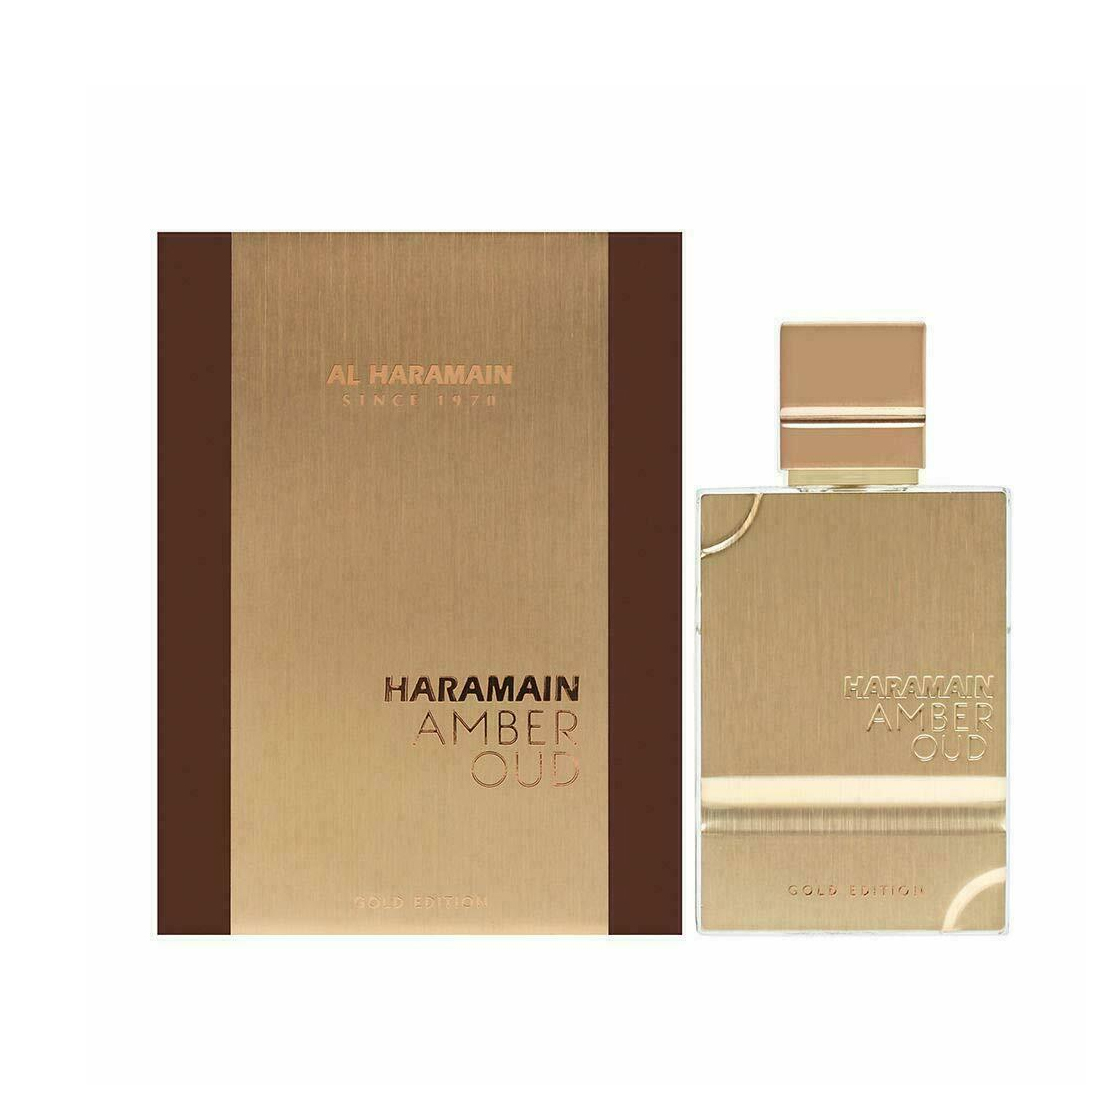 Al Haramain Amber Oud Gold Edition 20 ml NIŠINIAI kvepalų mėginukas (atomaizeris) Unisex EDP